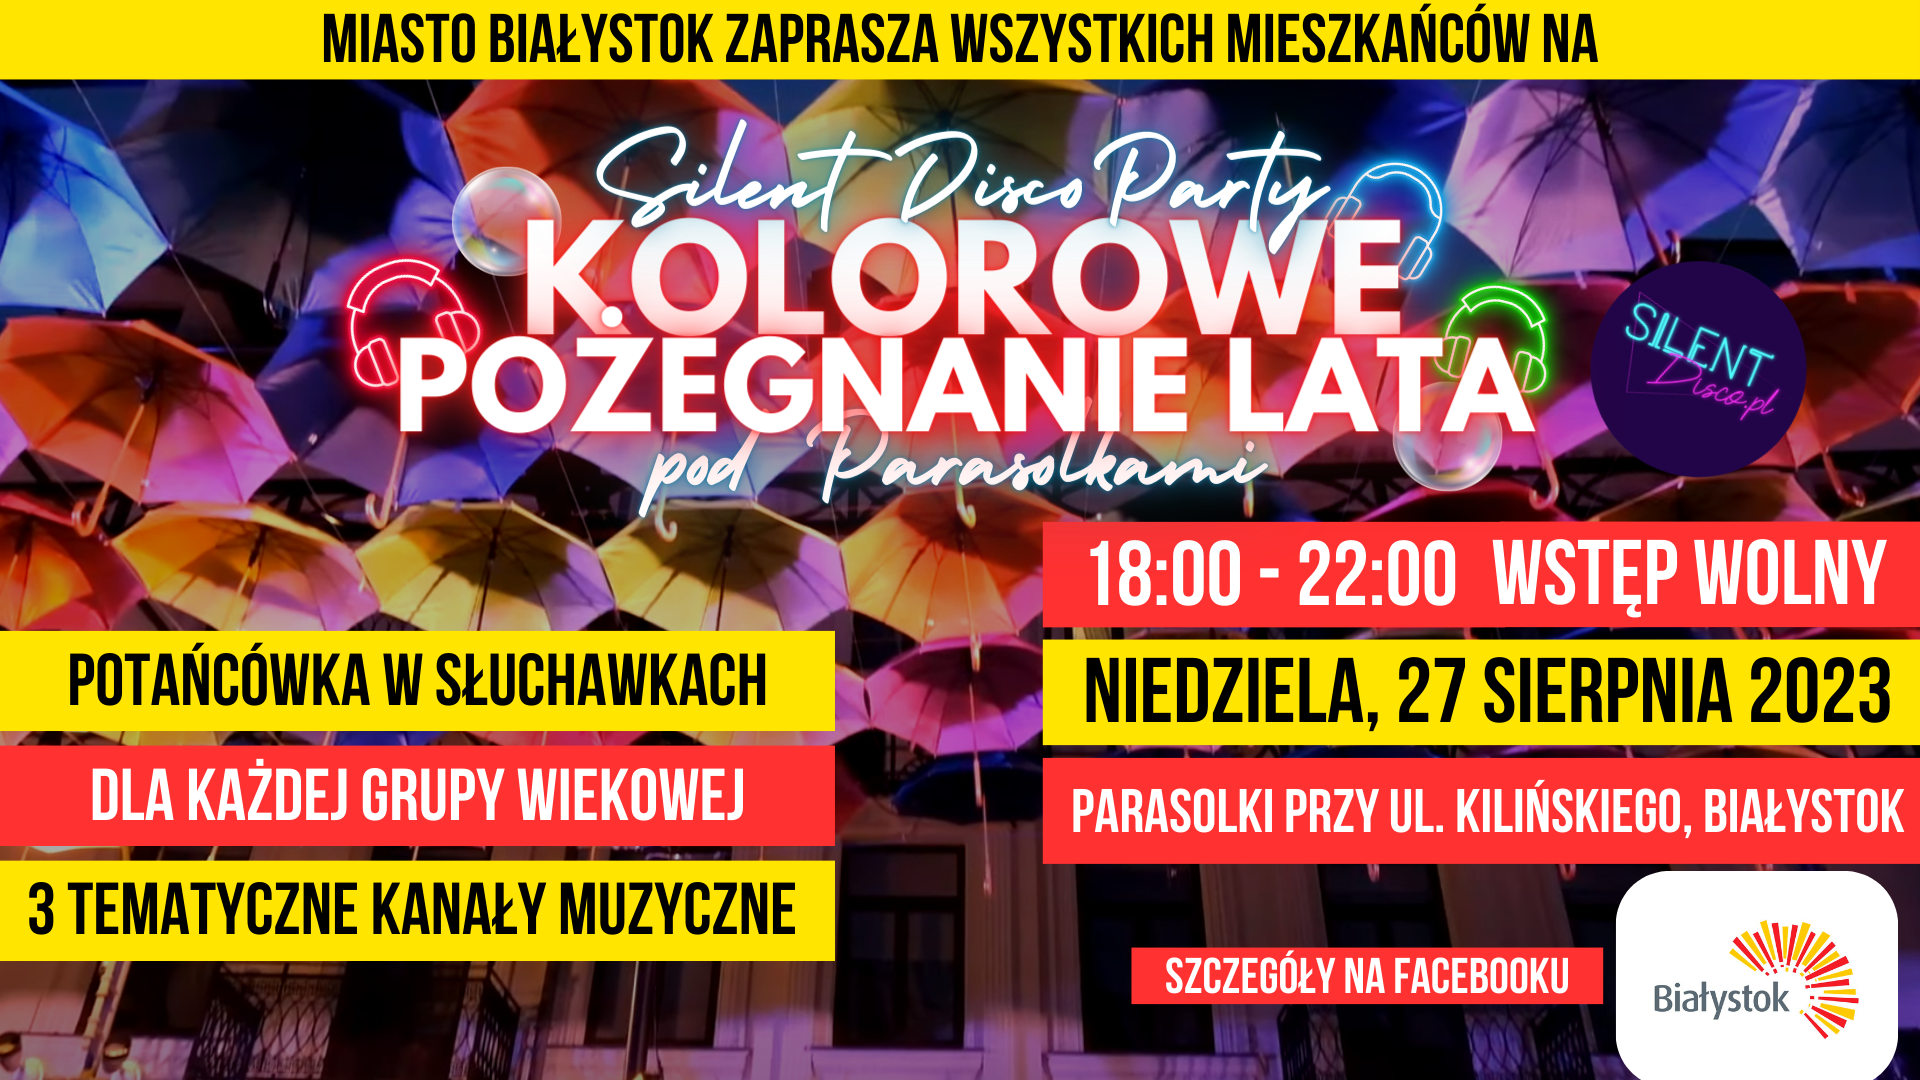 Plakat: Silent Disco Party Kolorowe Pożegnanie Lata pod Parasolkami, 27.08.2023 r w godz. 18:00-22:00. Wstęp wolny